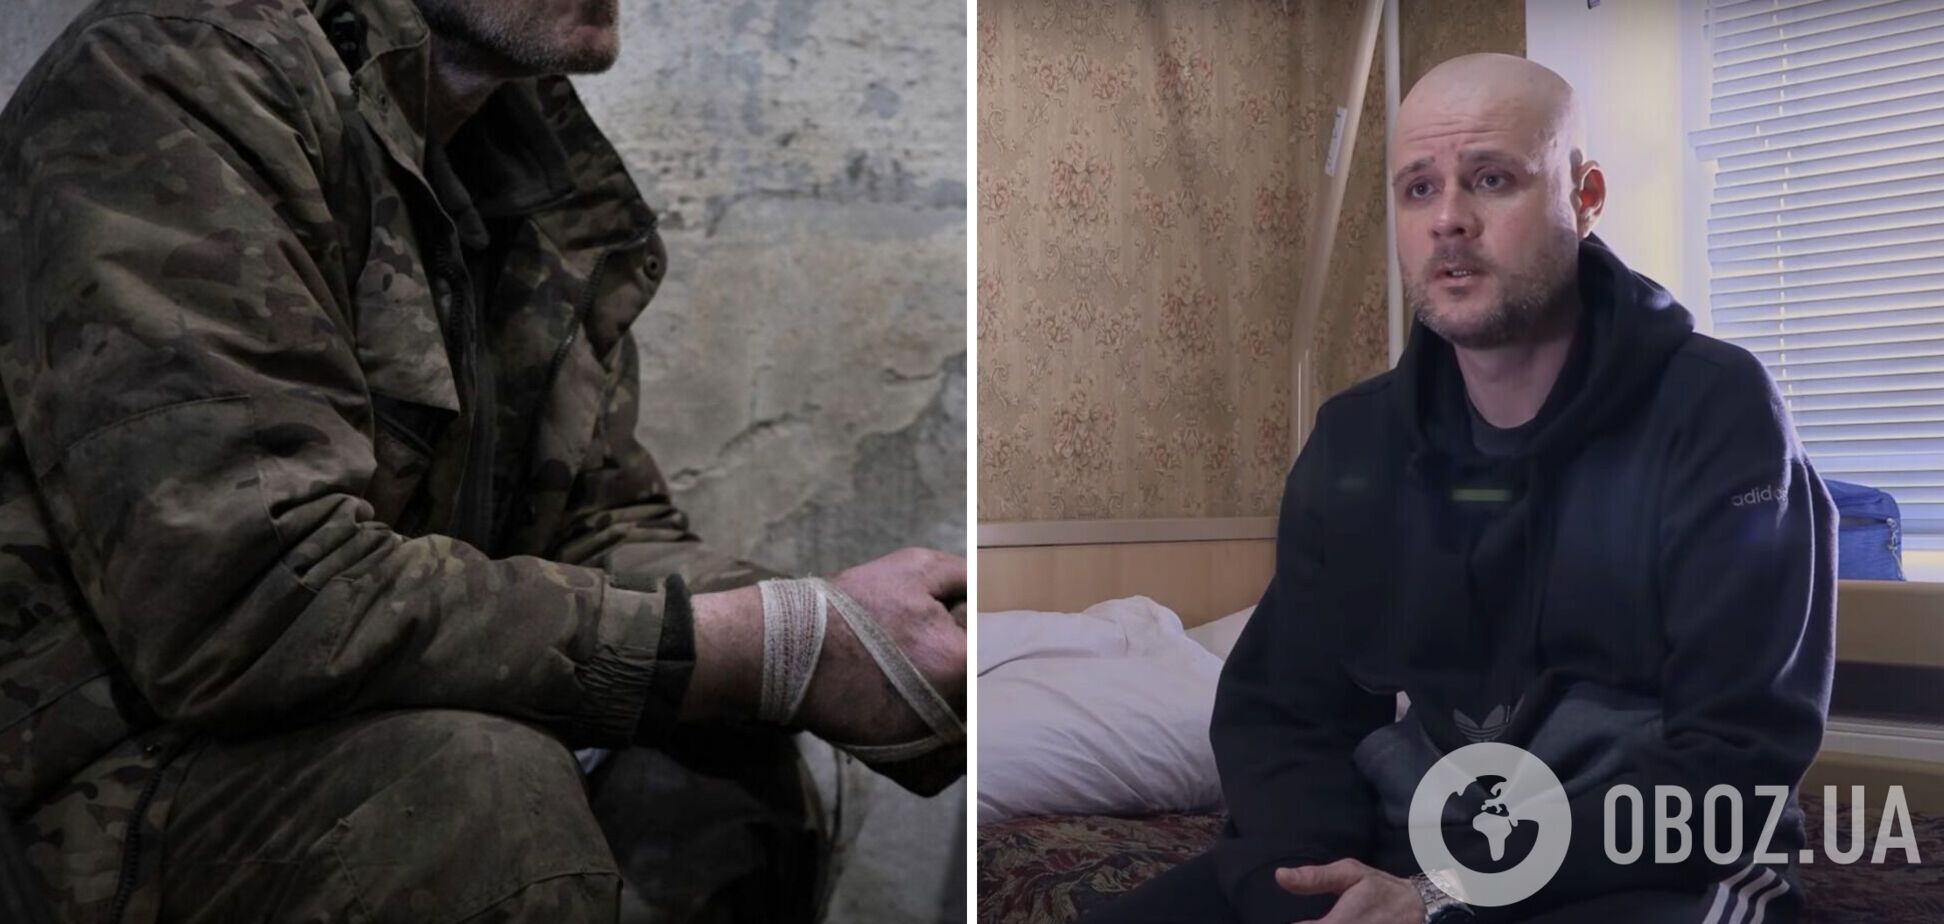 'Такого зверства к людям никогда не видел': пограничник рассказал, как оккупанты издевались над украинскими пленными. Видео